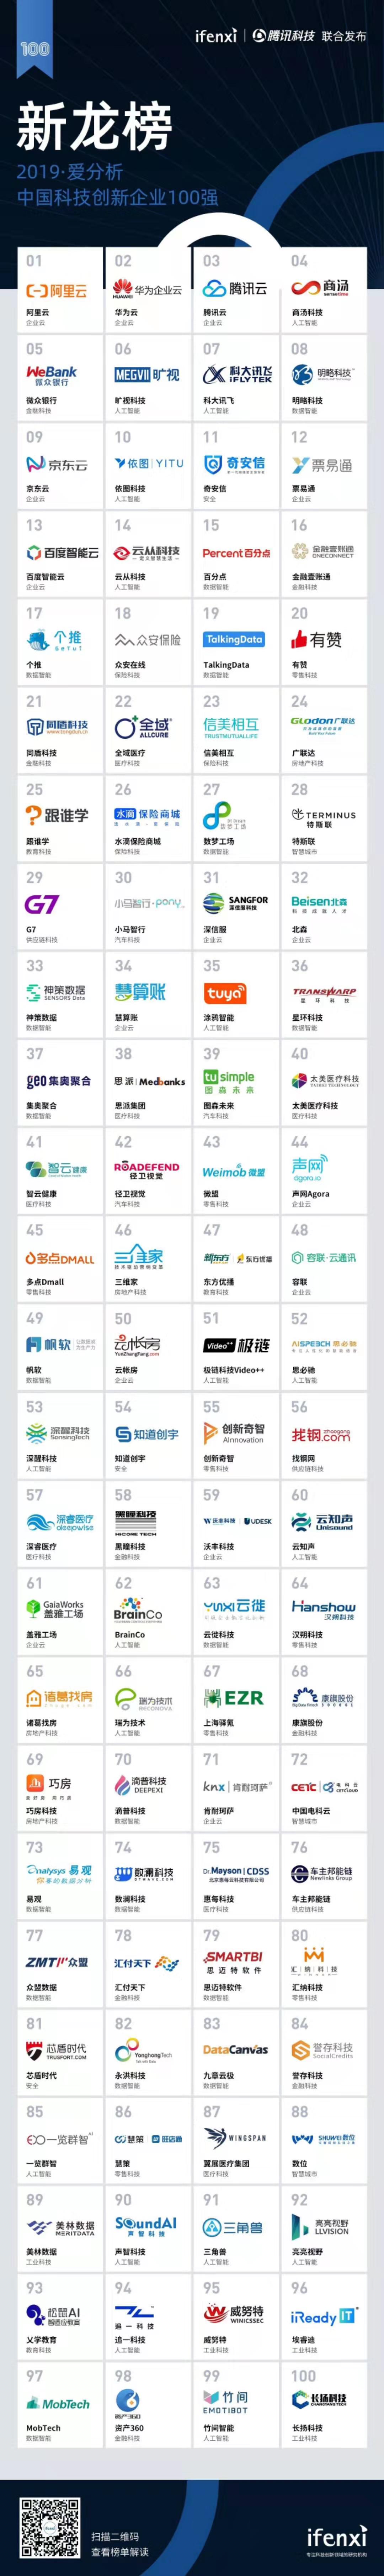 2019爱分析·中国科技创新企业100强正式发布 | 新龙榜